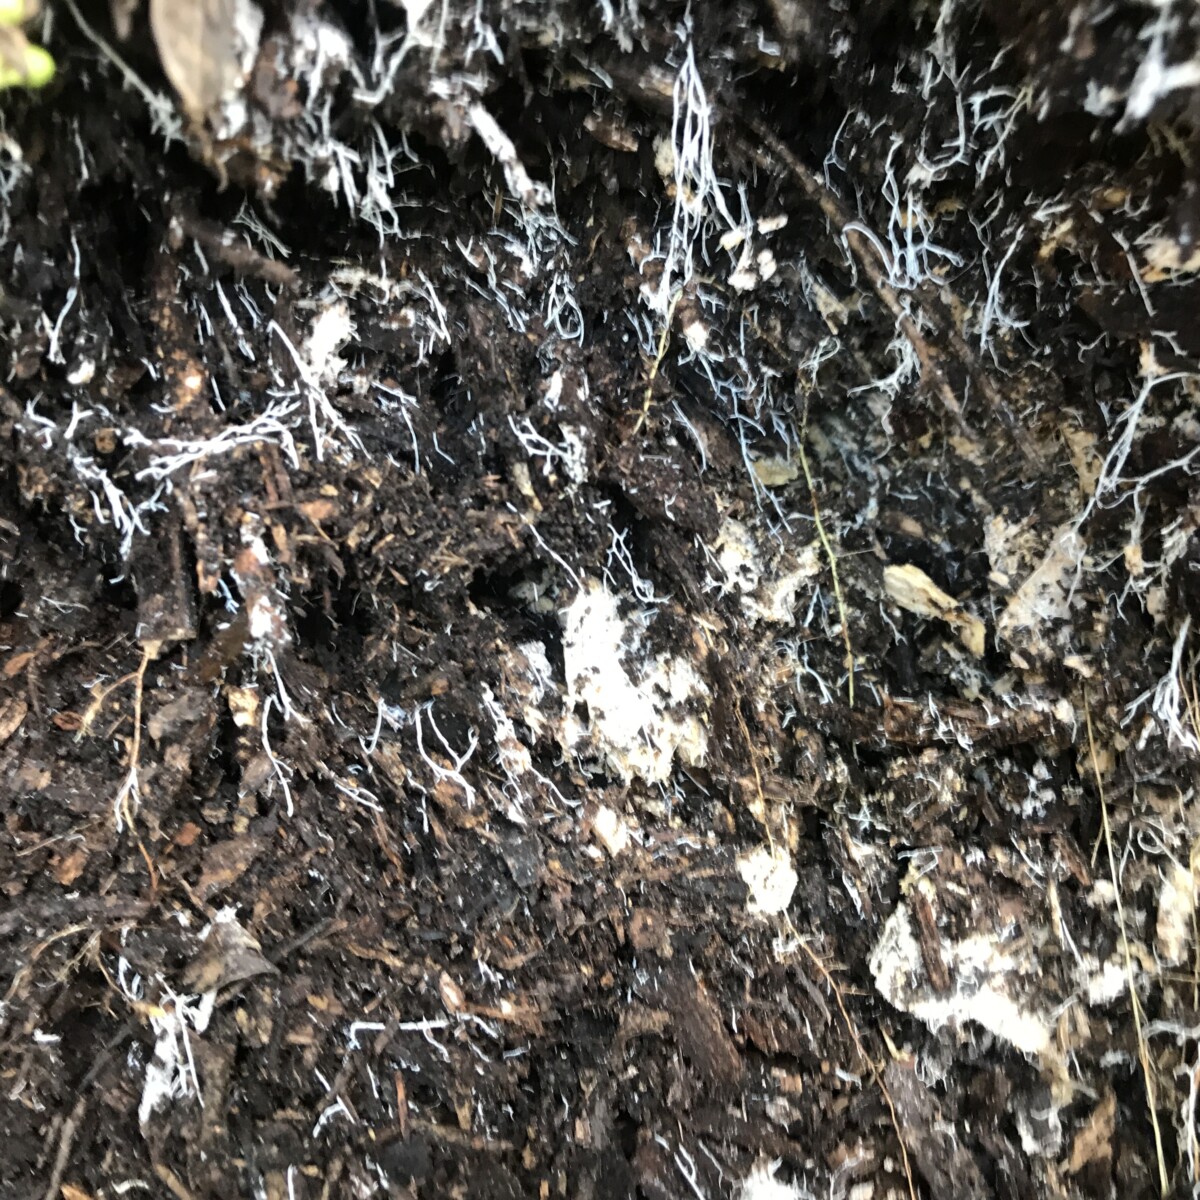 Mycorrhiza growing in mulch